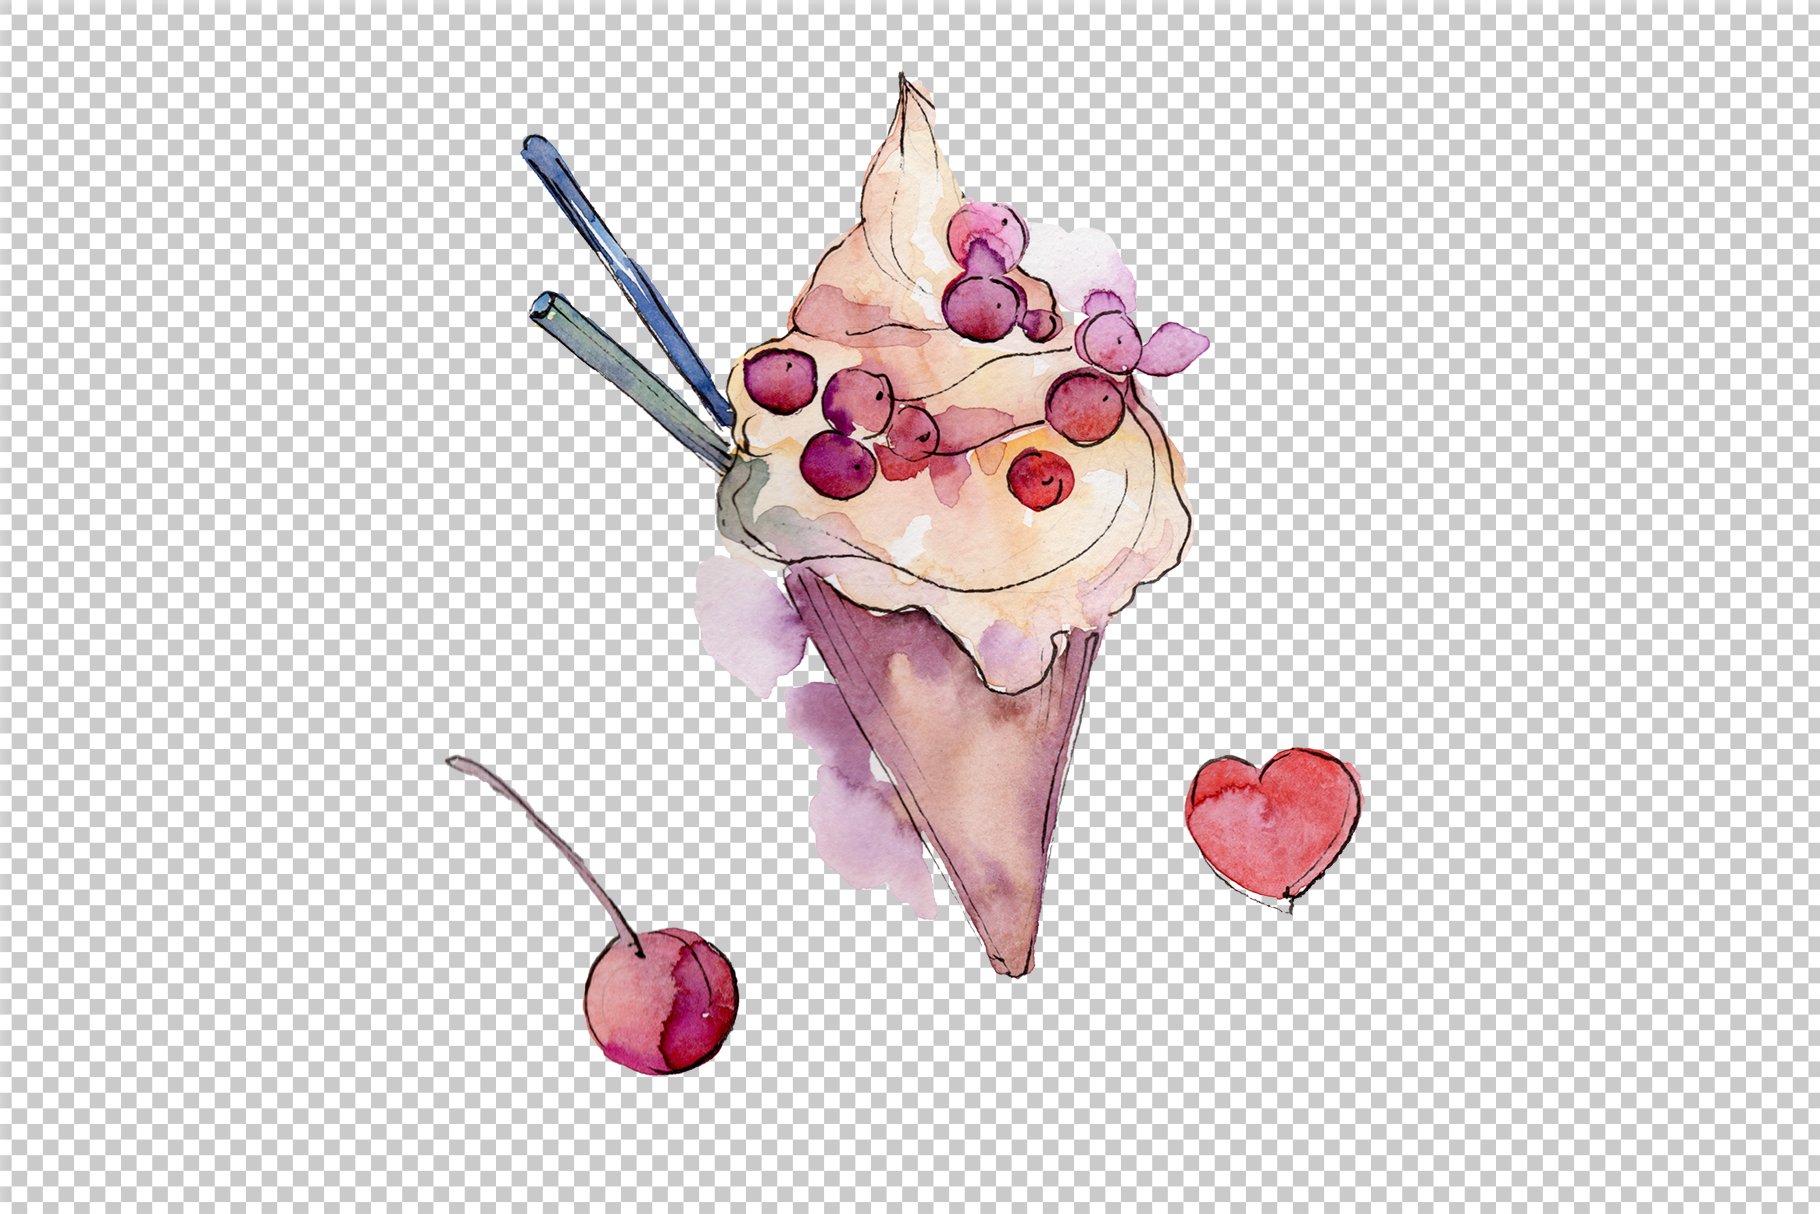 Watercolor lilac ice cream.